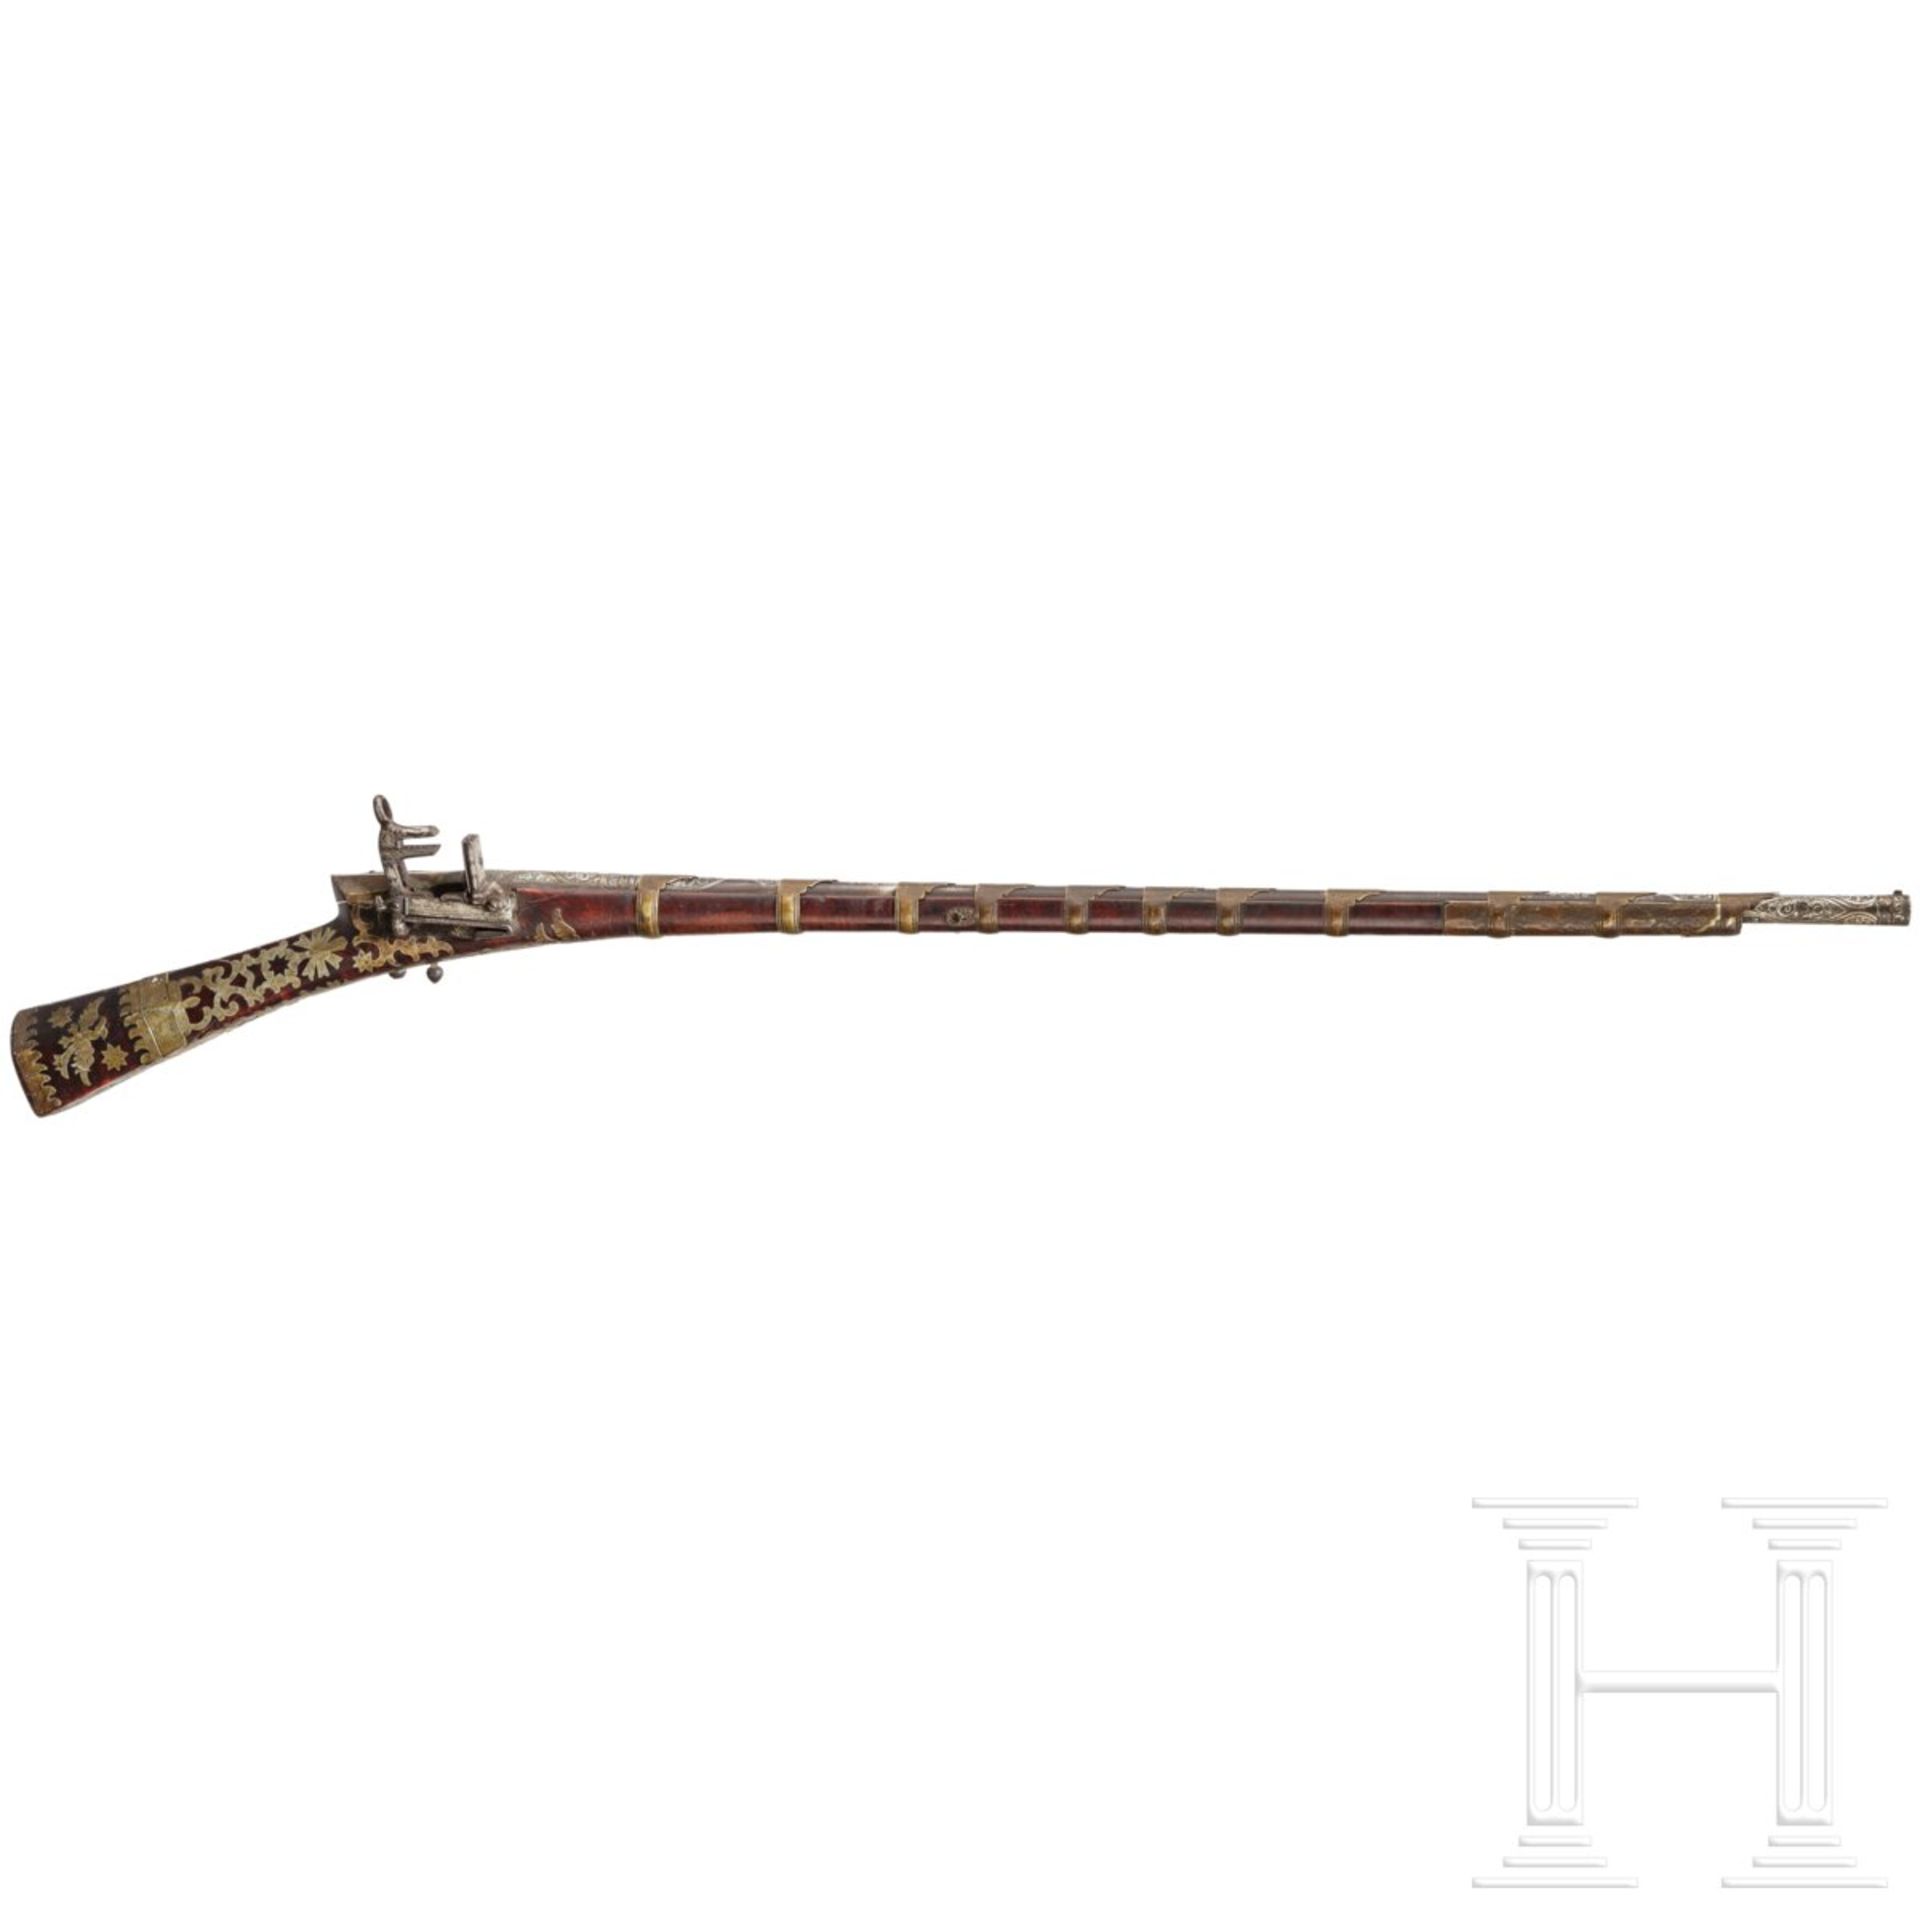 Miqueletgewehr (Tüfek), osmanisch, datiert 1803/04Im Mündungsbereich, auf der Oberseite und über der